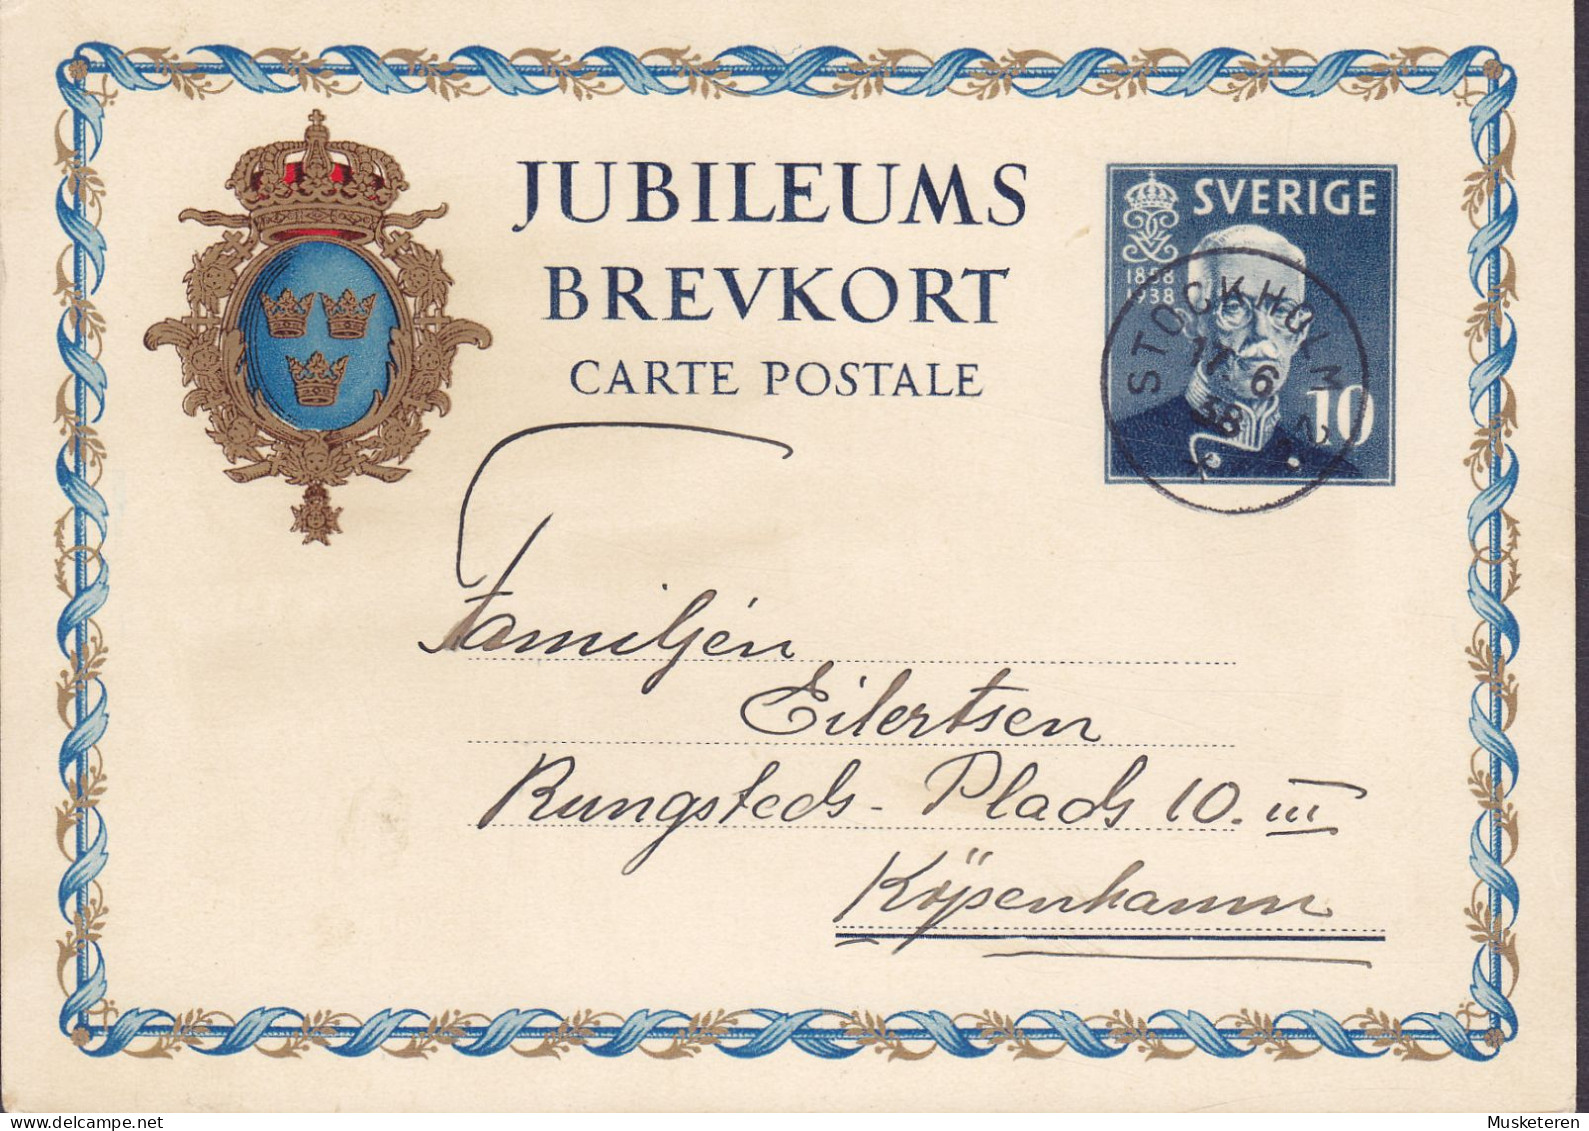 Sweden Postal Stationery Ganzsache Entier 10 Ø Jubileums Brevkort 1858-1938 STOCKHOLM 1938 KØBENHAVN Denmark - Enteros Postales